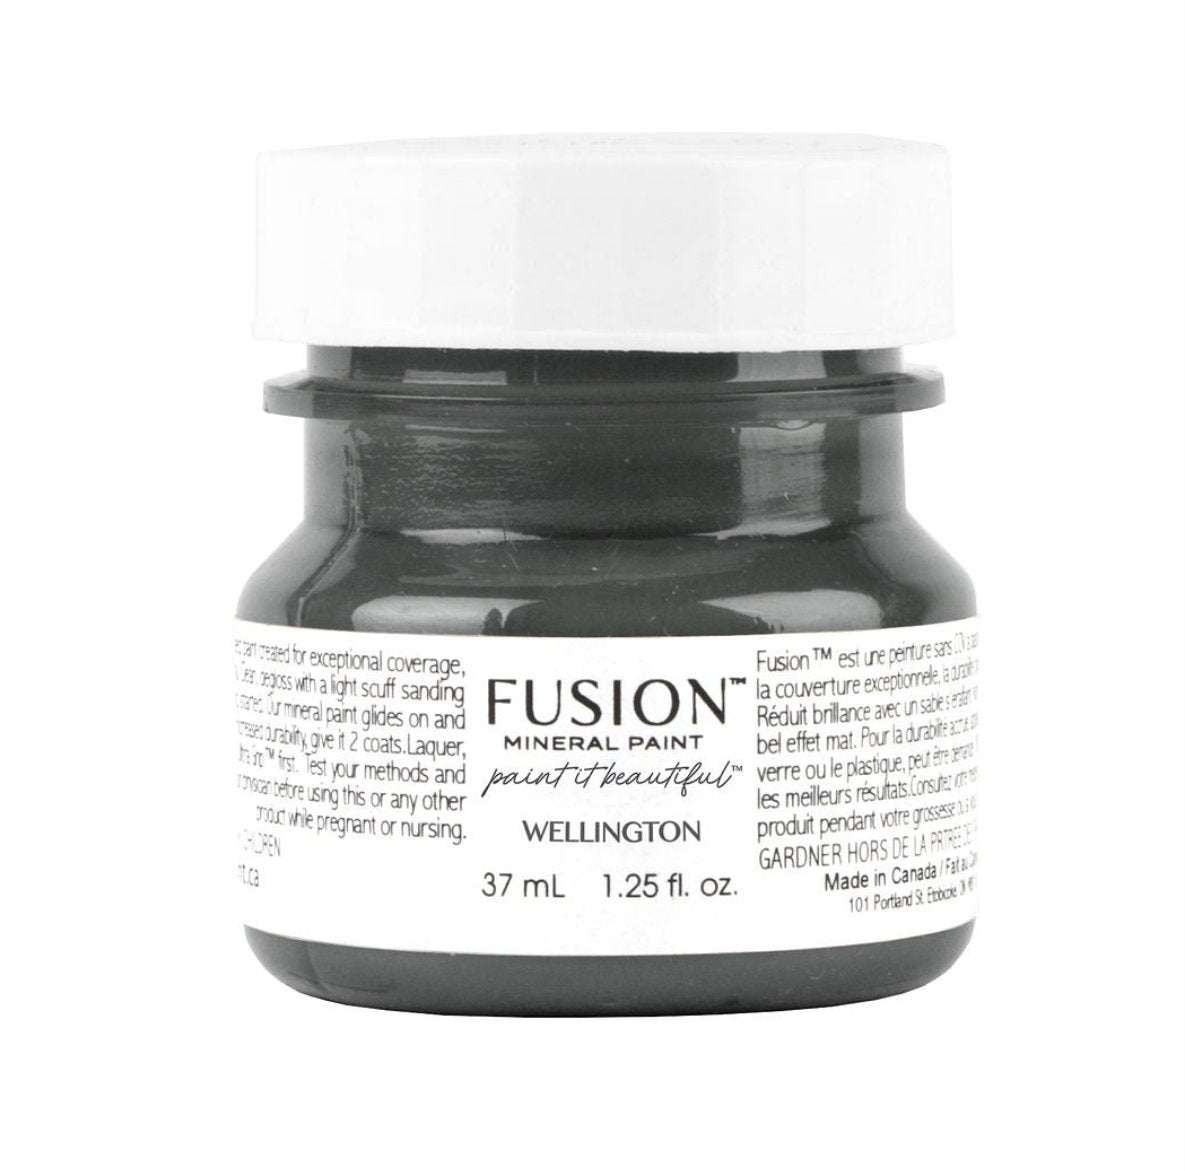 Fusion mineral paint wellington tester pot